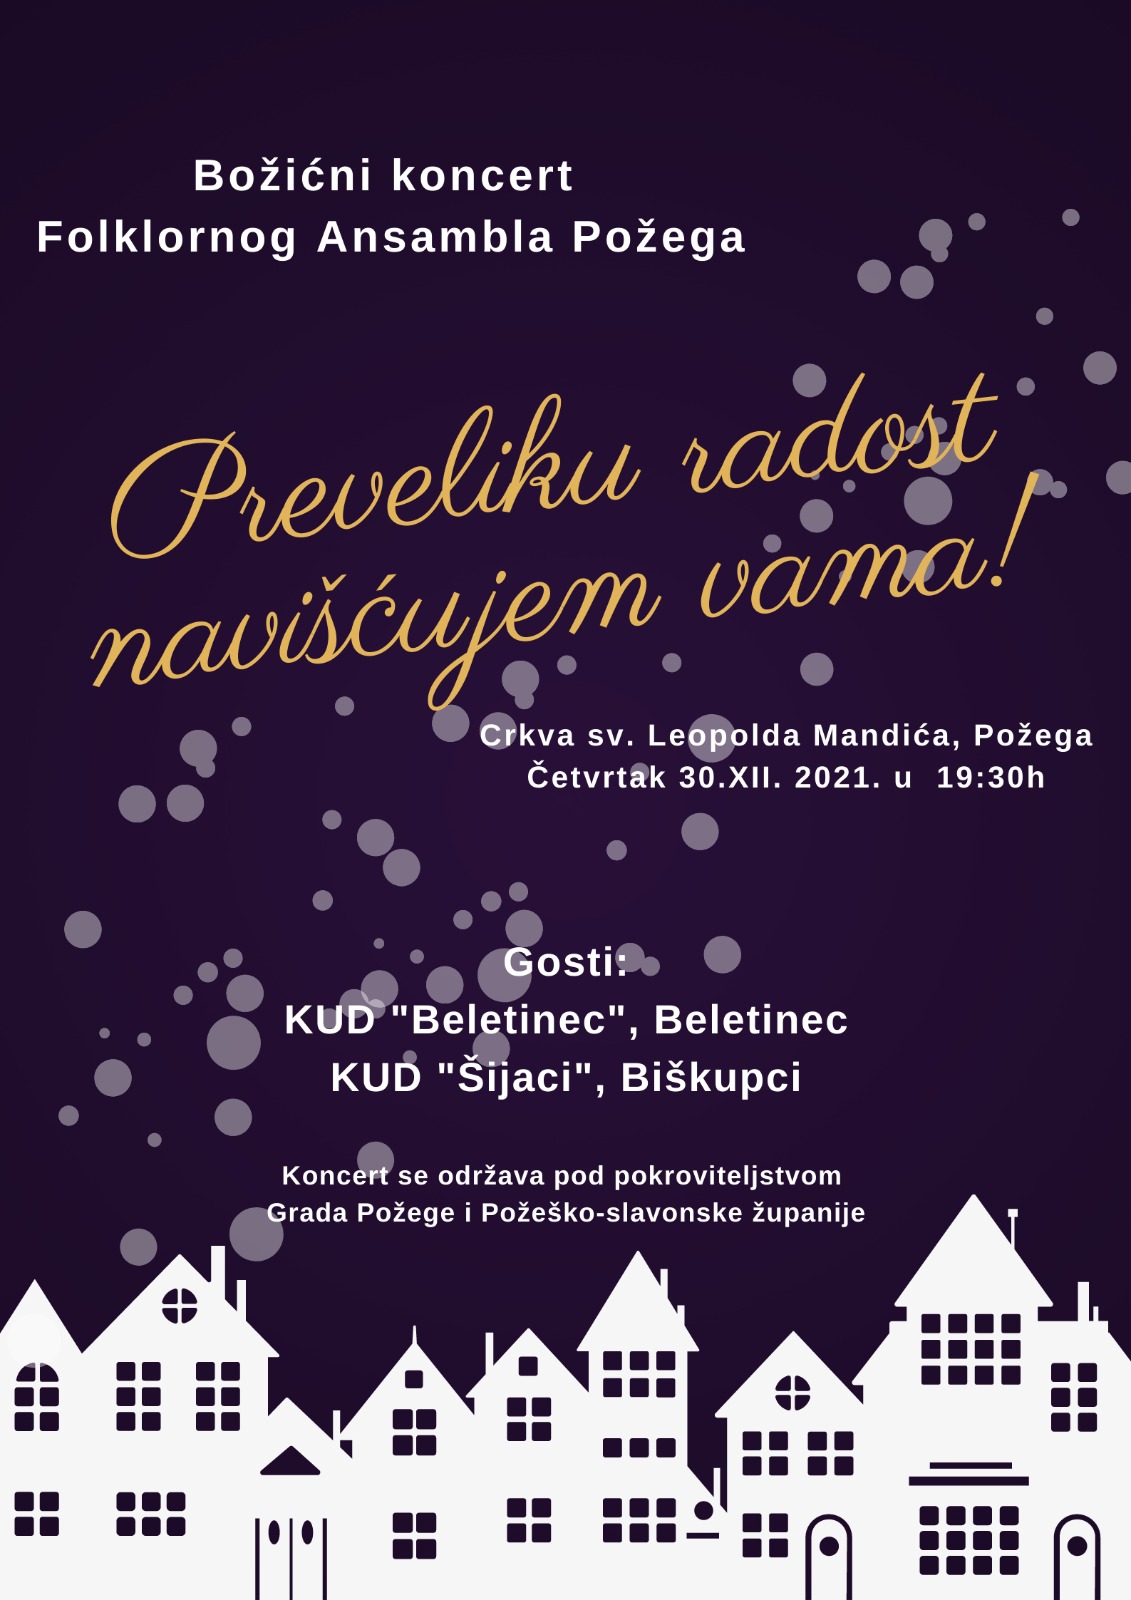 Požega.eu | Folklorni ansambl Požega priređuje ovog četvrtka Božićni koncert sa svojim gostima